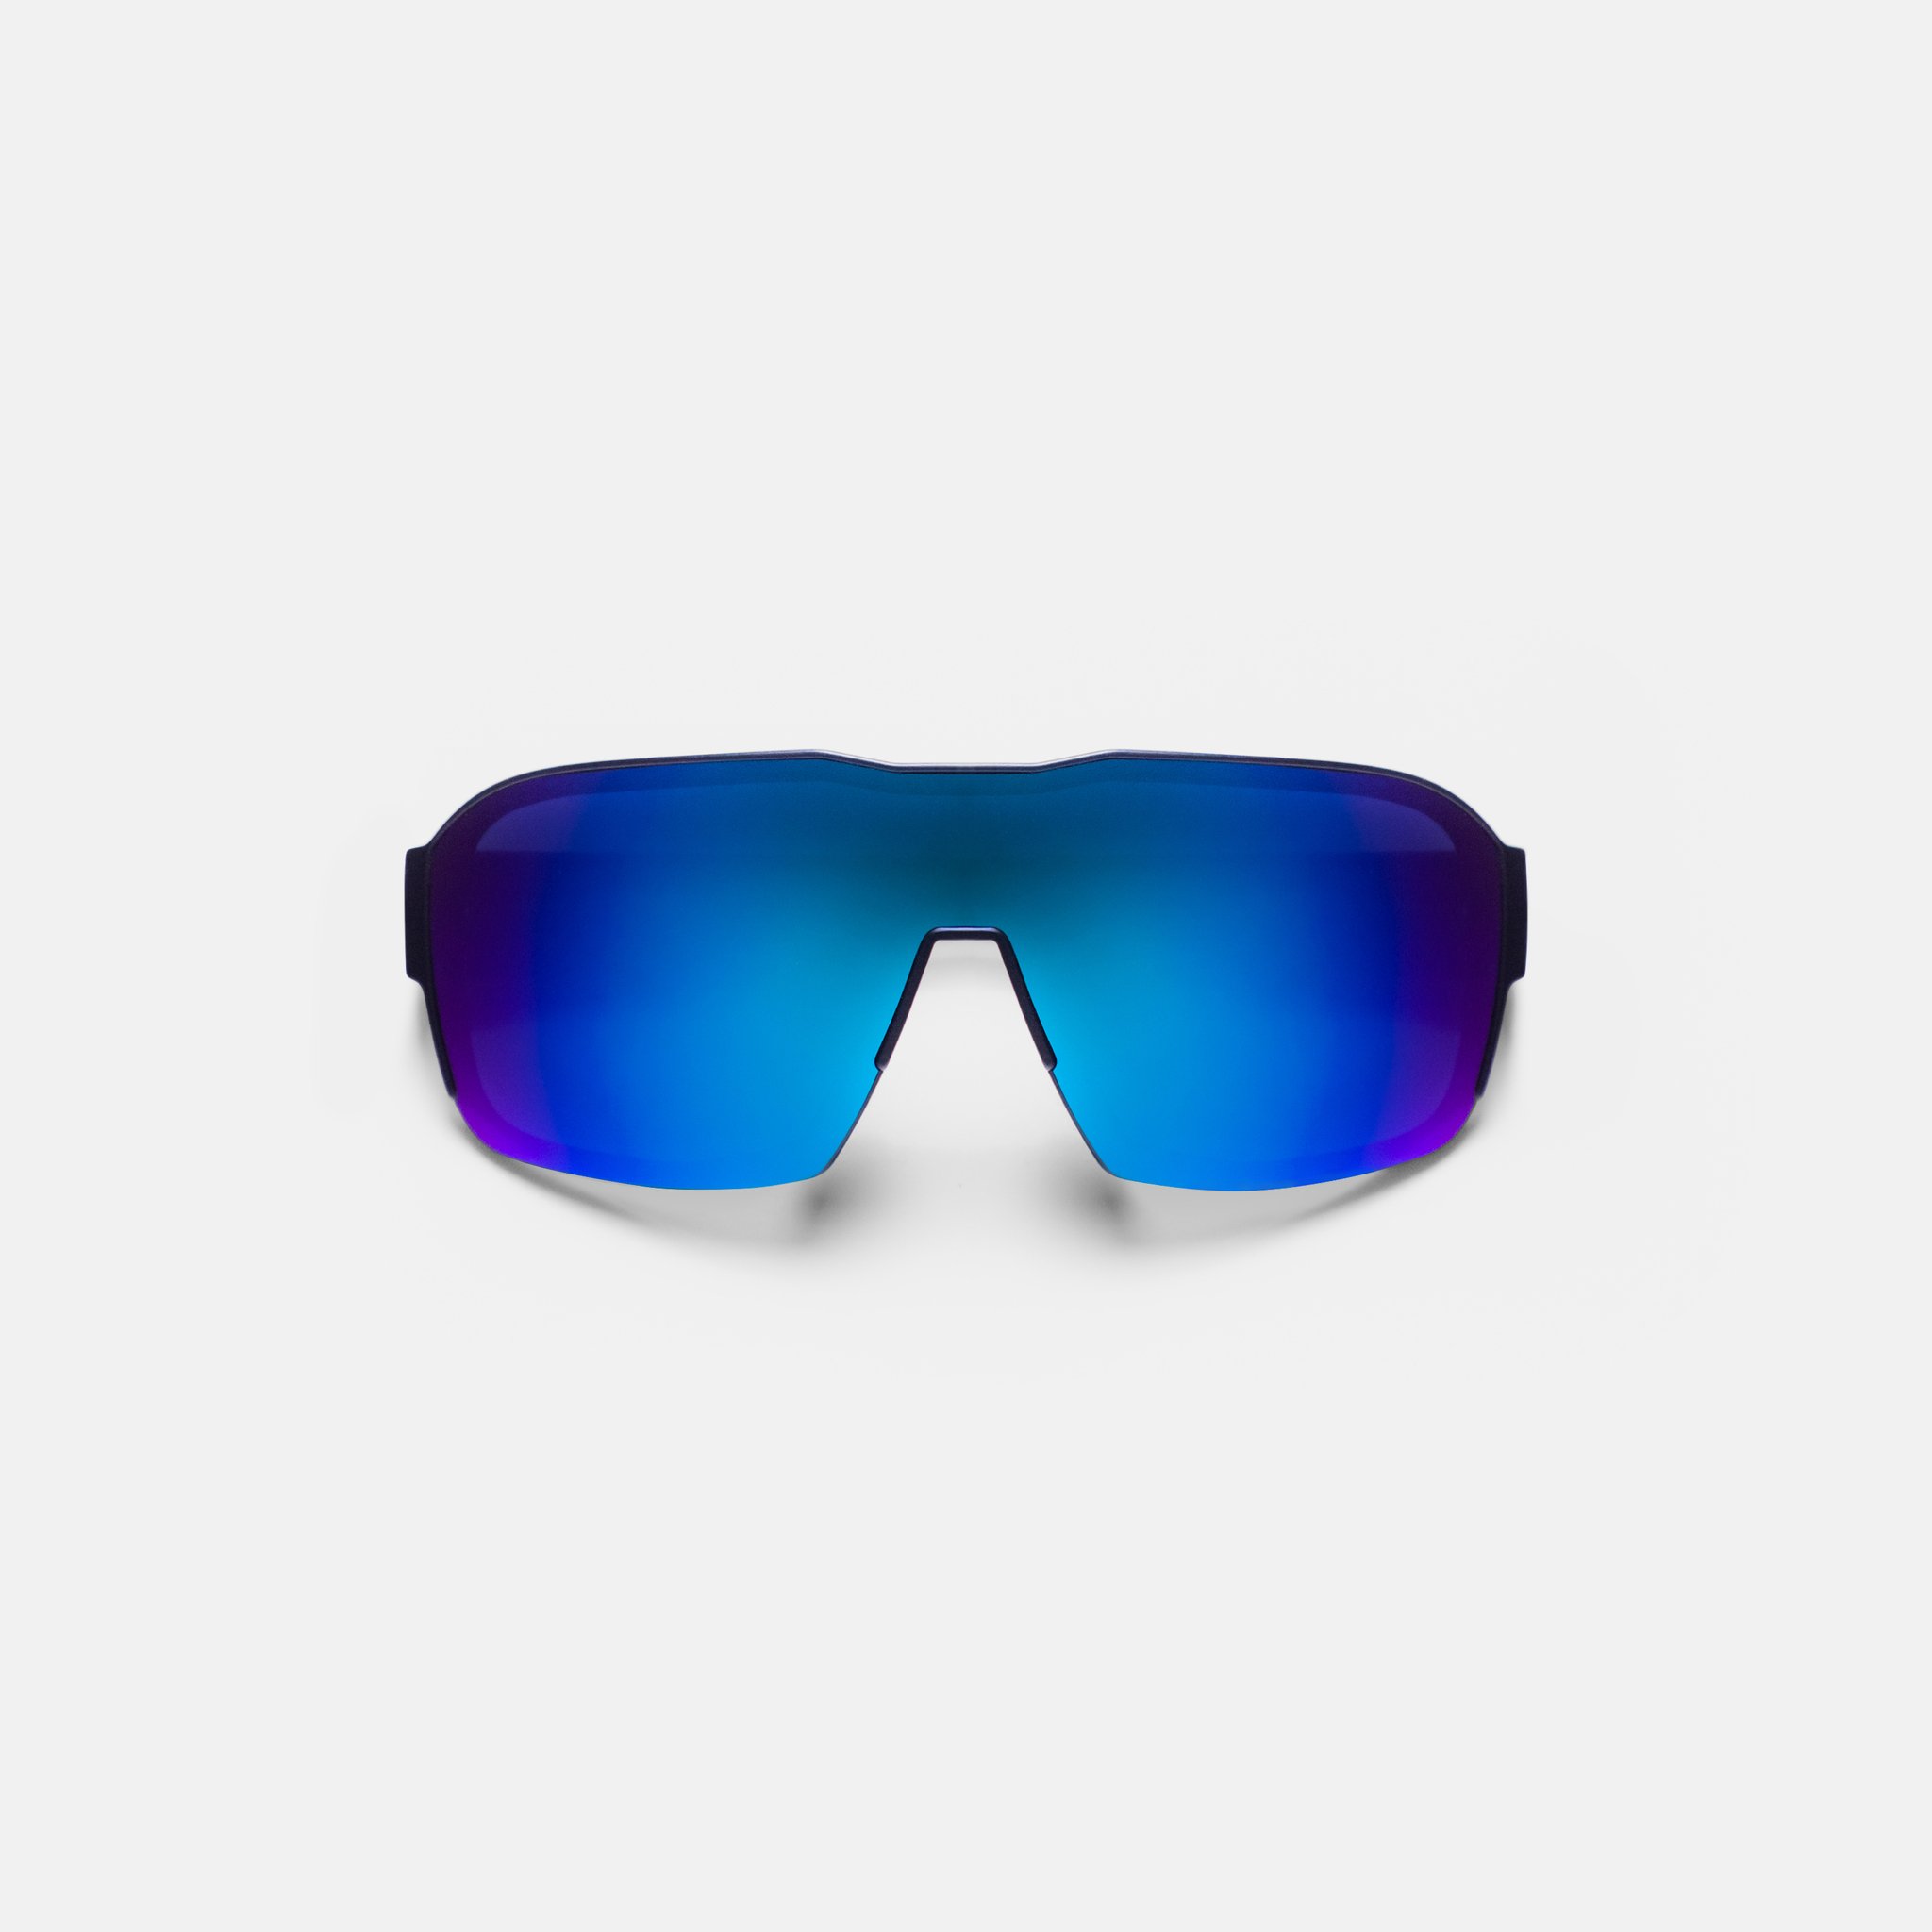  синие солнцезащитные очки White Lab Thor Thor-ultramarin - цена, описание, фото 1